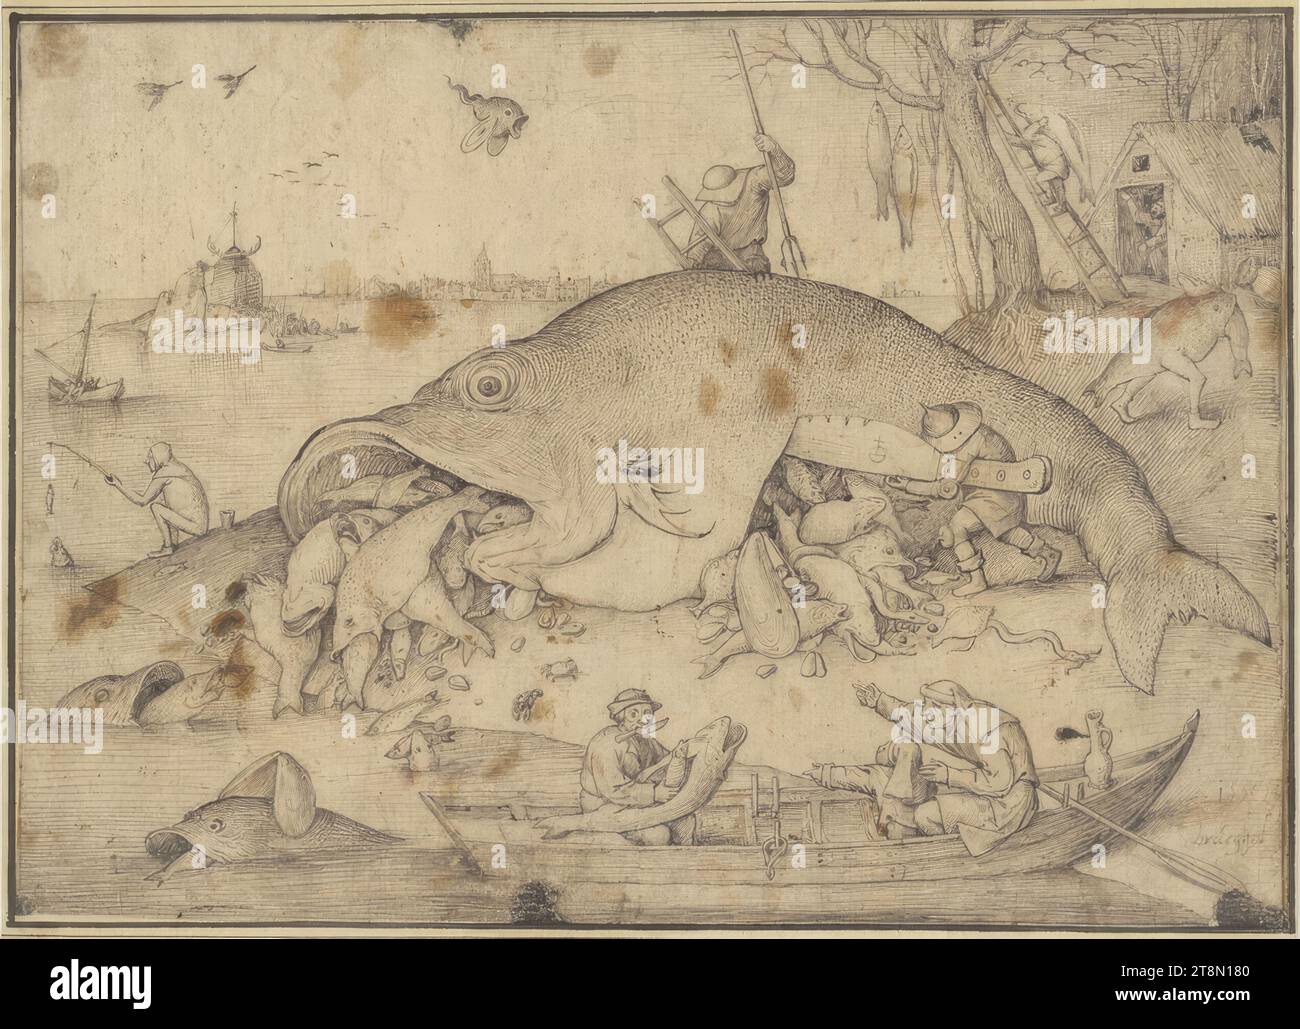 Die großen Fische fressen die Kleinen, Pieter Bruegel der Jüngere. (Breda?) 1526/27 - 1569 Brüssel), 1556, Zeichnung, Stift und Pinsel in grau und schwarz, 21,6 x 30,7 cm, l. l. l. Herzog Albert von Sachsen-Teschen, r. '1556, bruegel Stockfoto